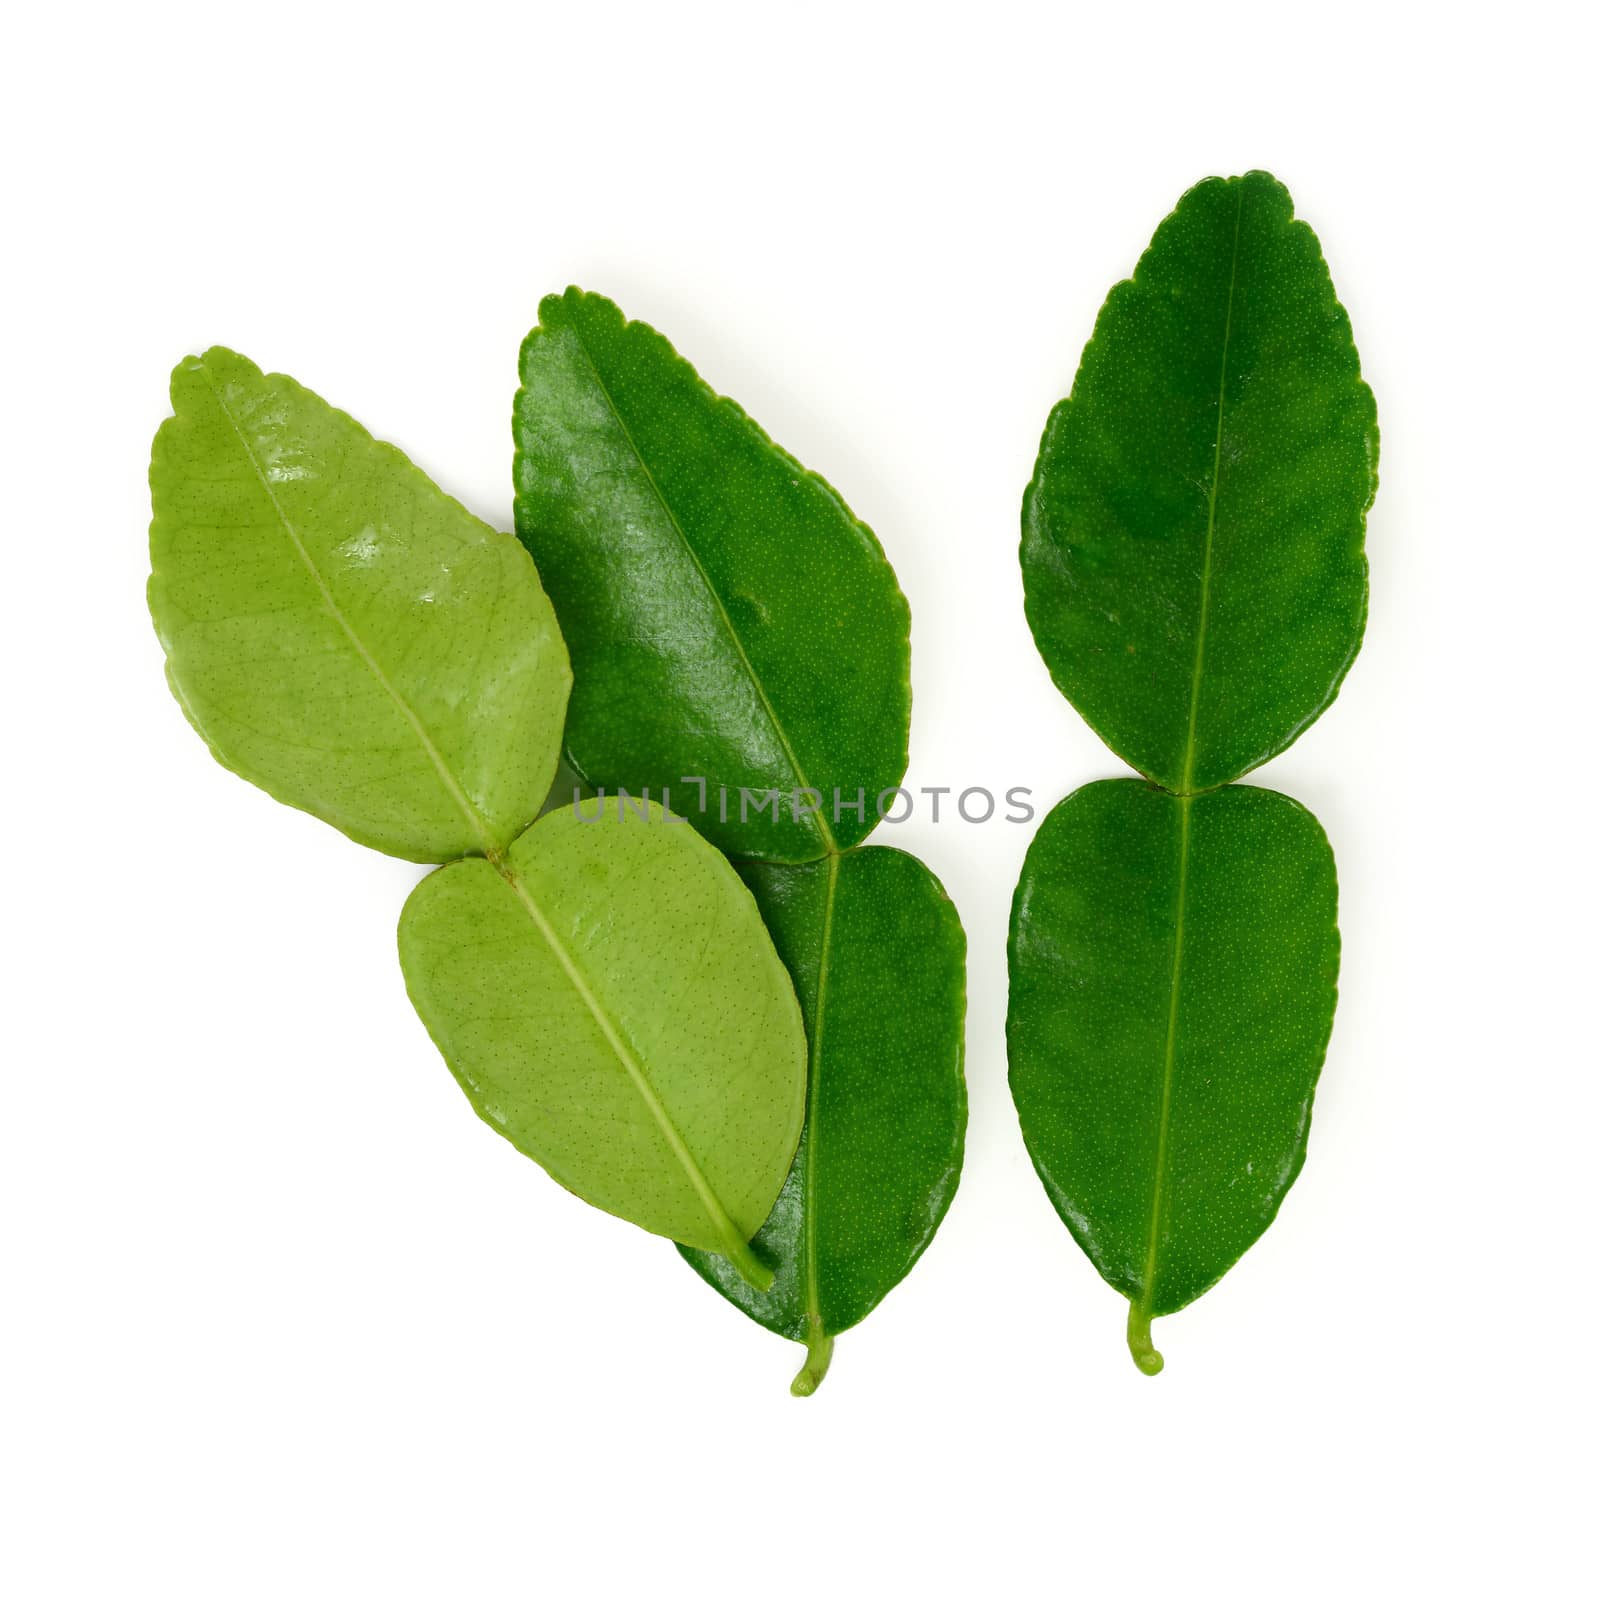 kaffir lime leaf by antpkr